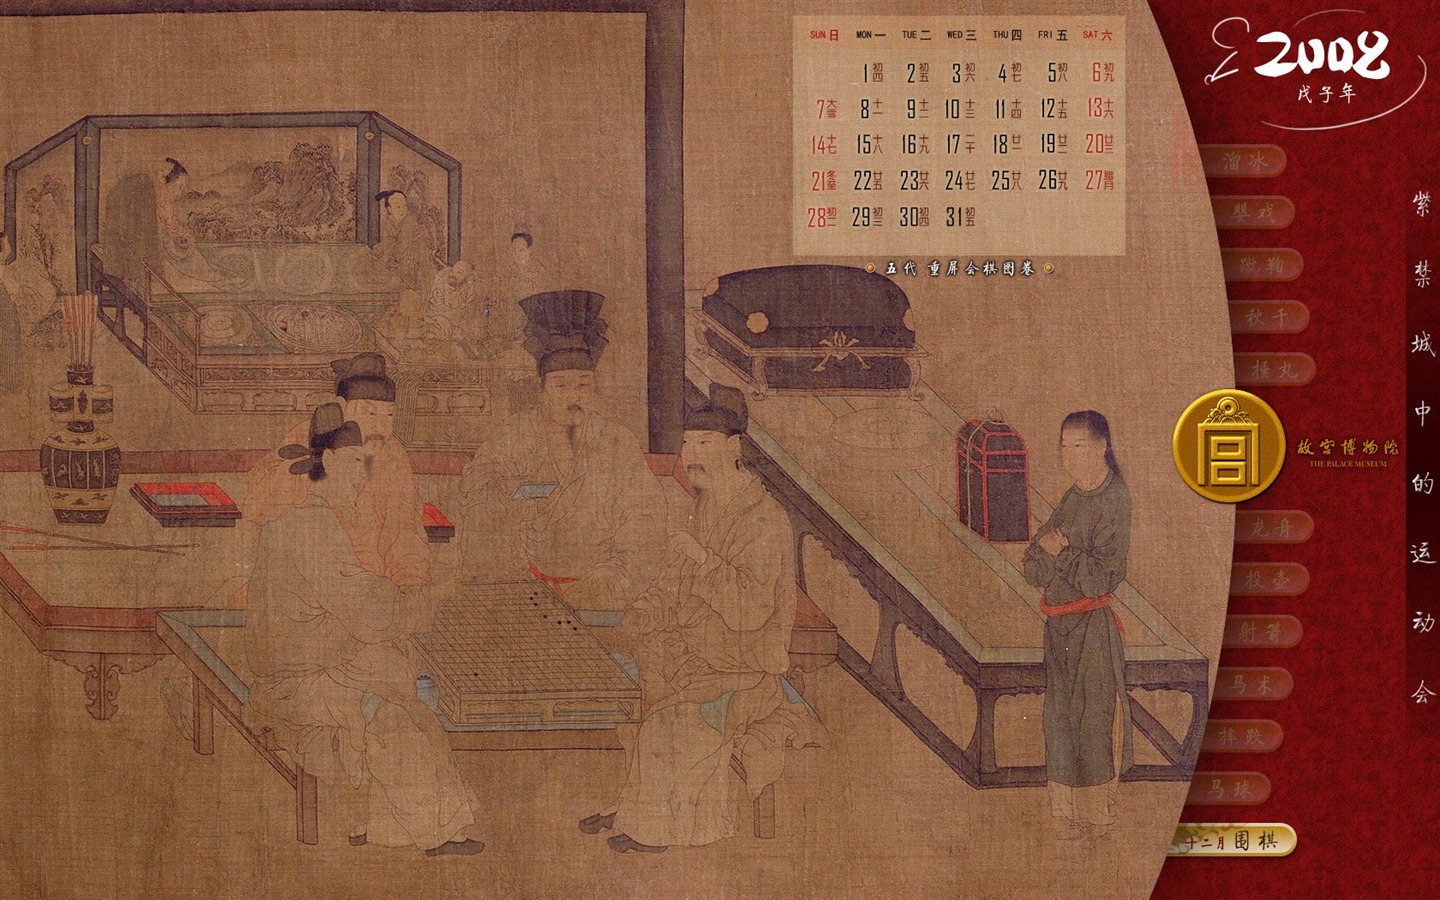 北京故宫博物院 文物展壁纸(二)24 - 1440x900